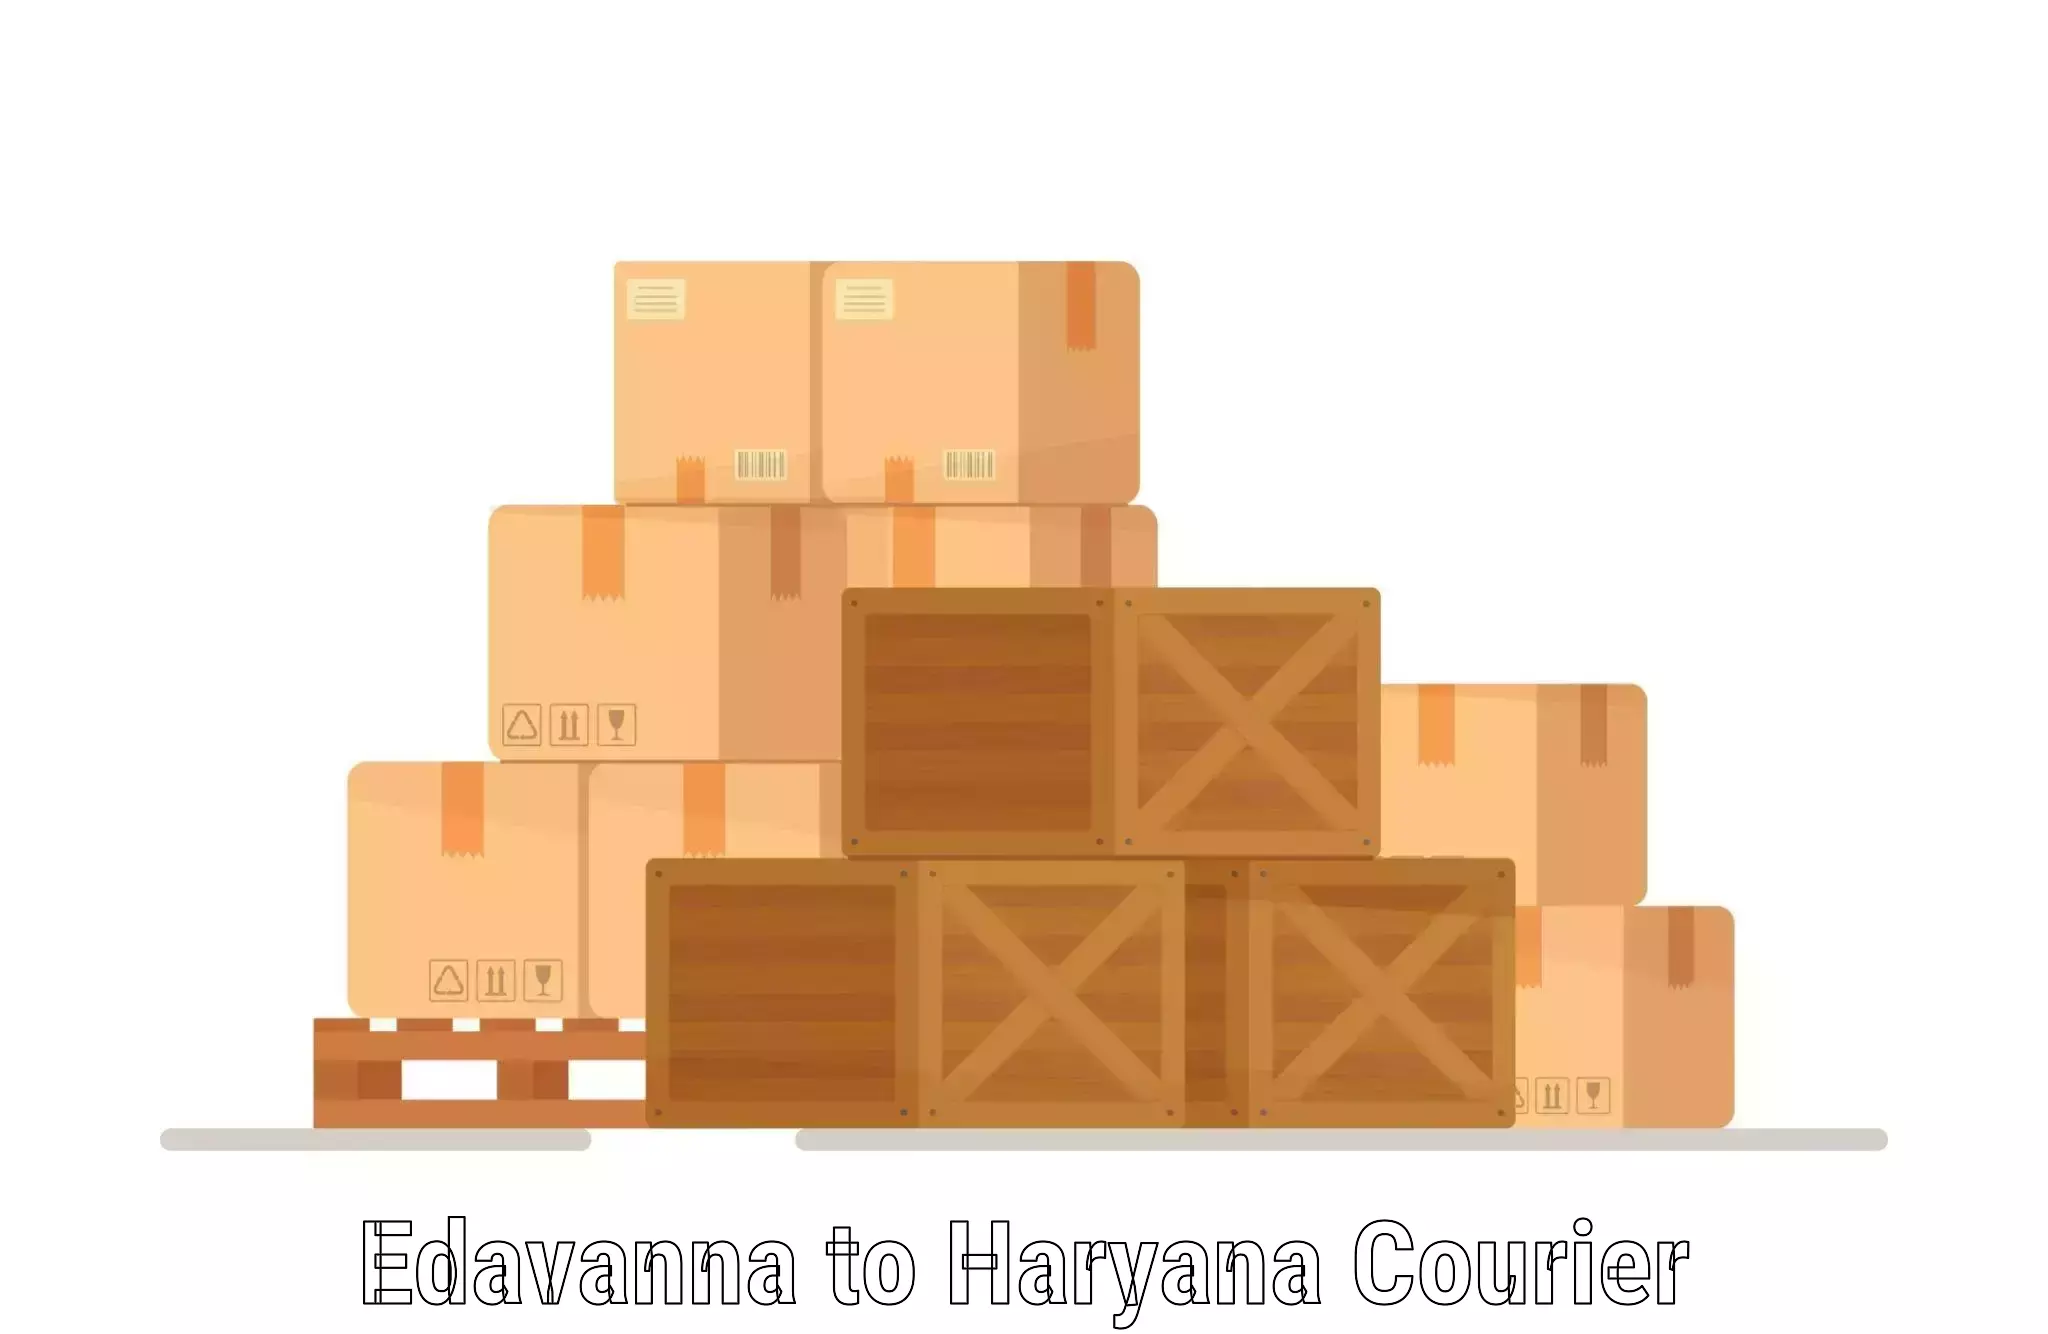 Ocean freight courier Edavanna to Assandh